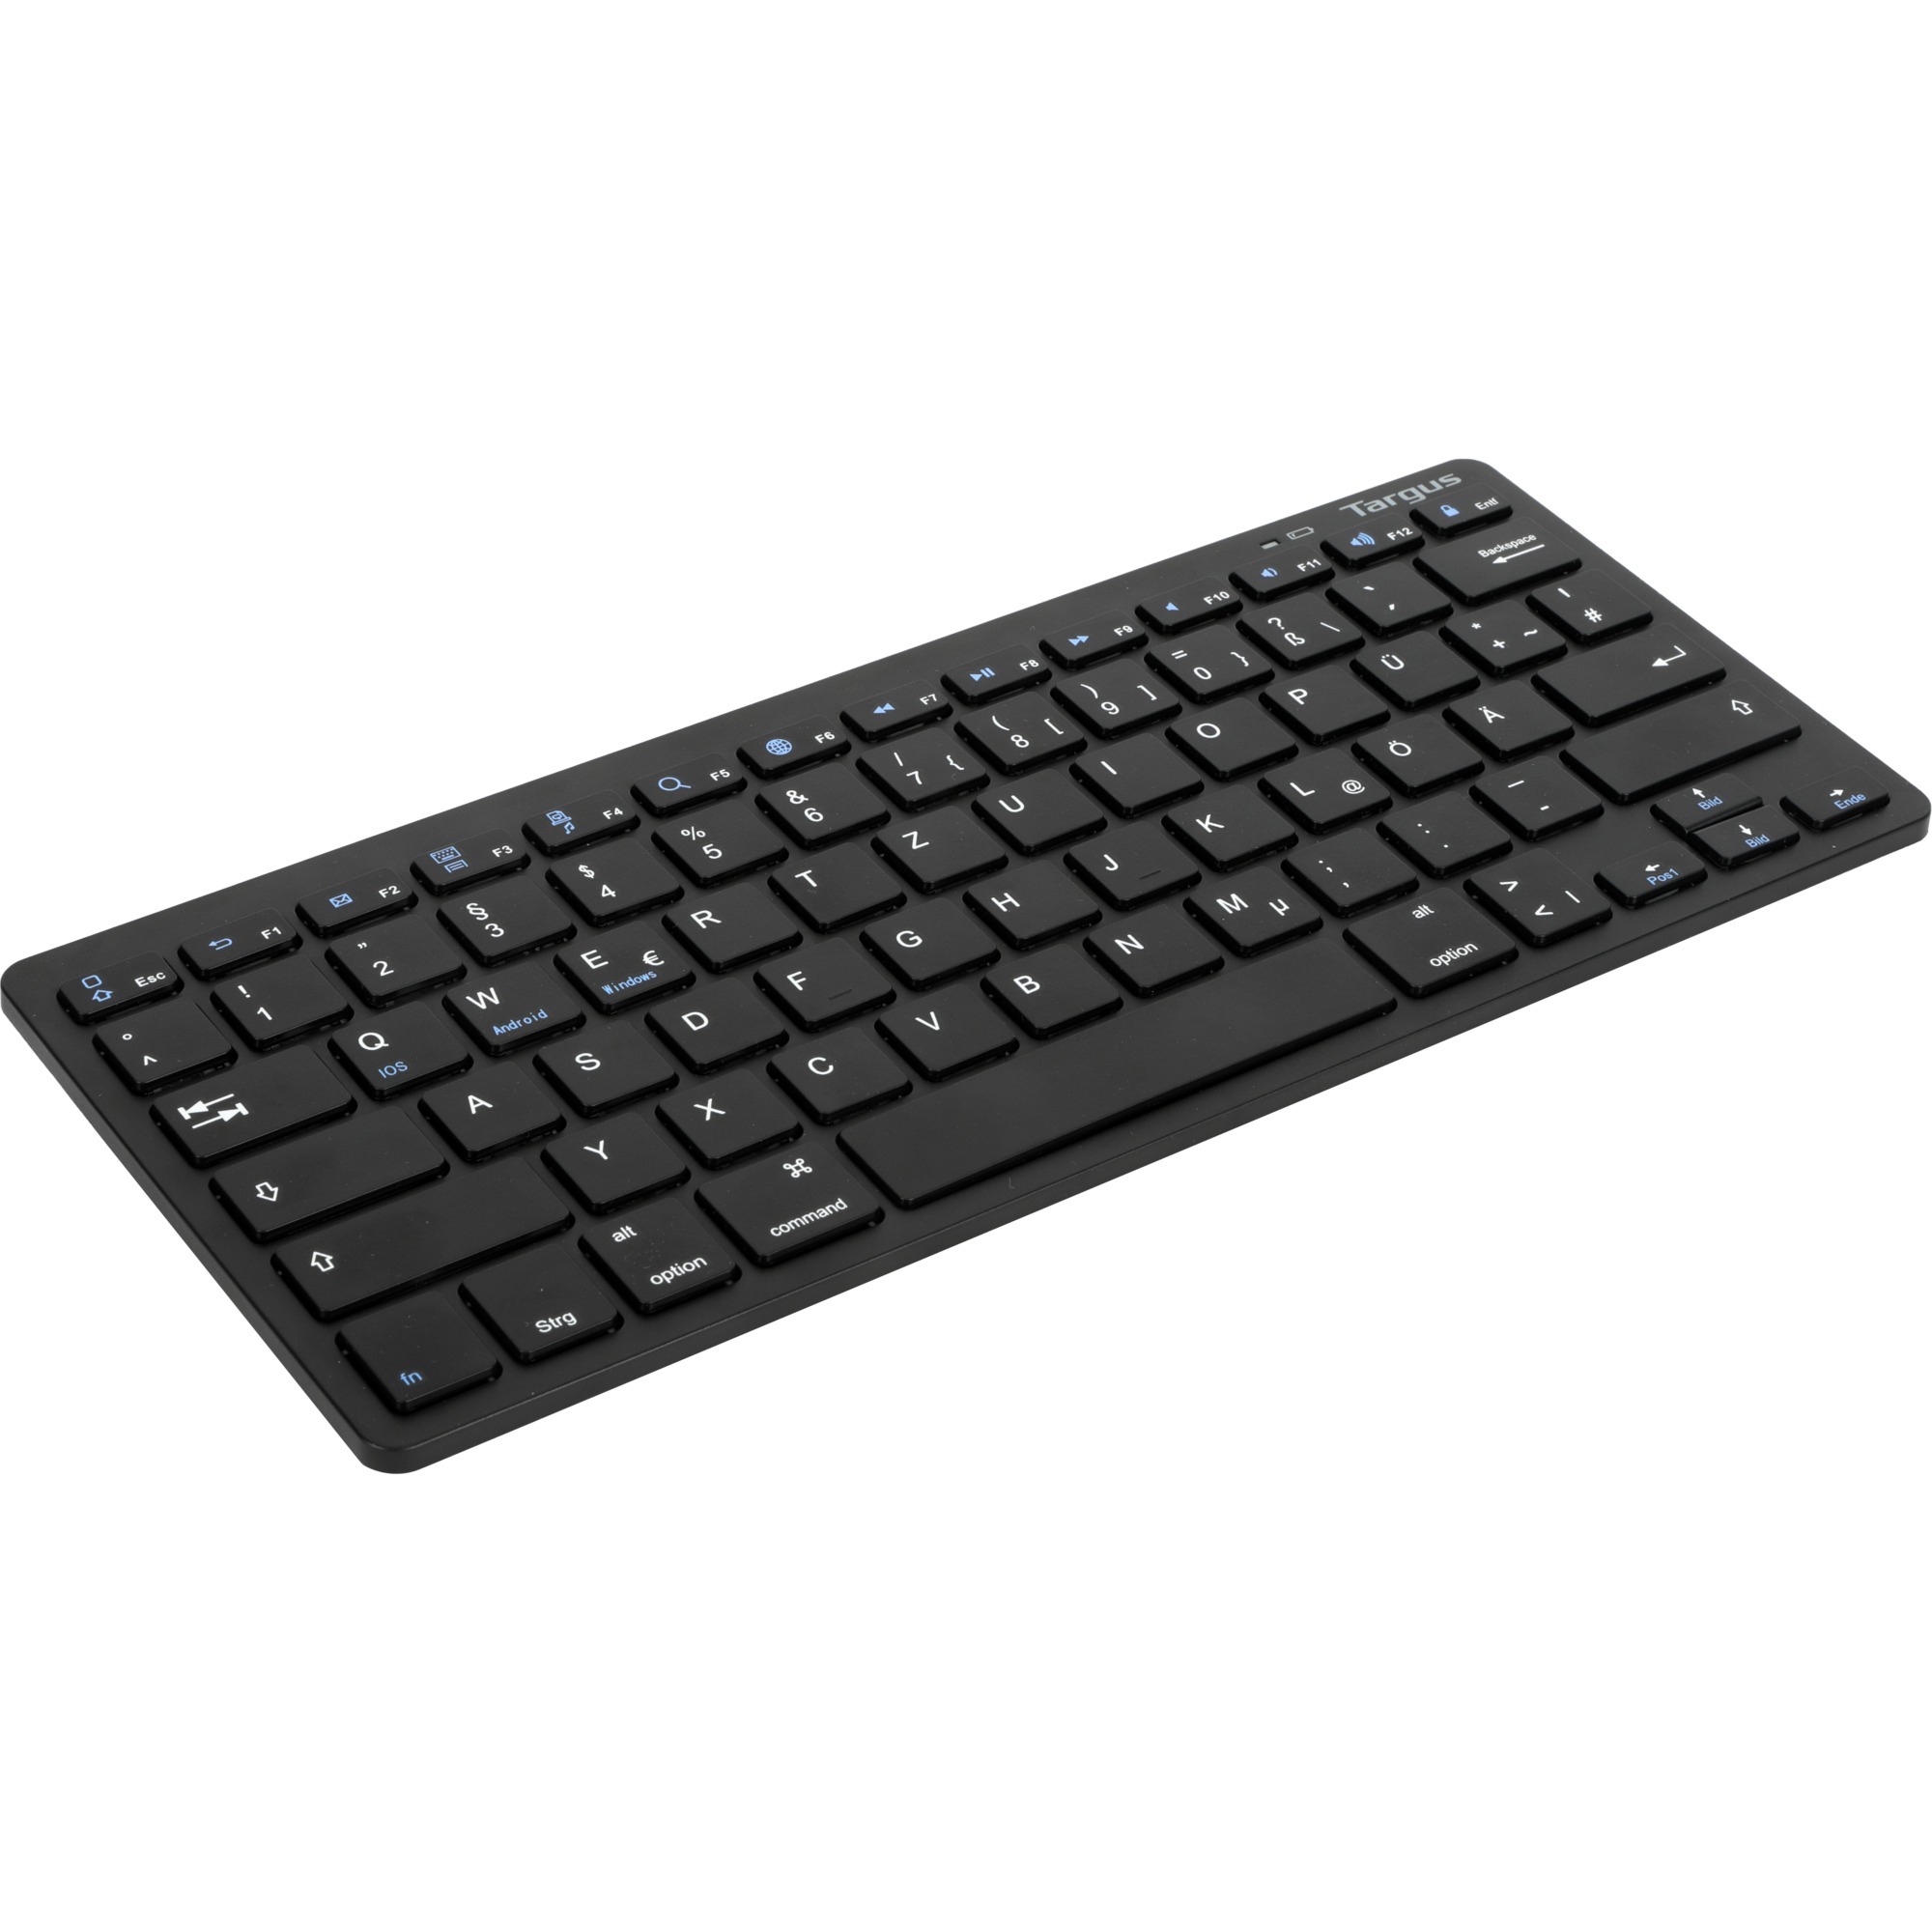 Image of Alternate - Multi-Plattform Bluetooth Tastatur online einkaufen bei Alternate